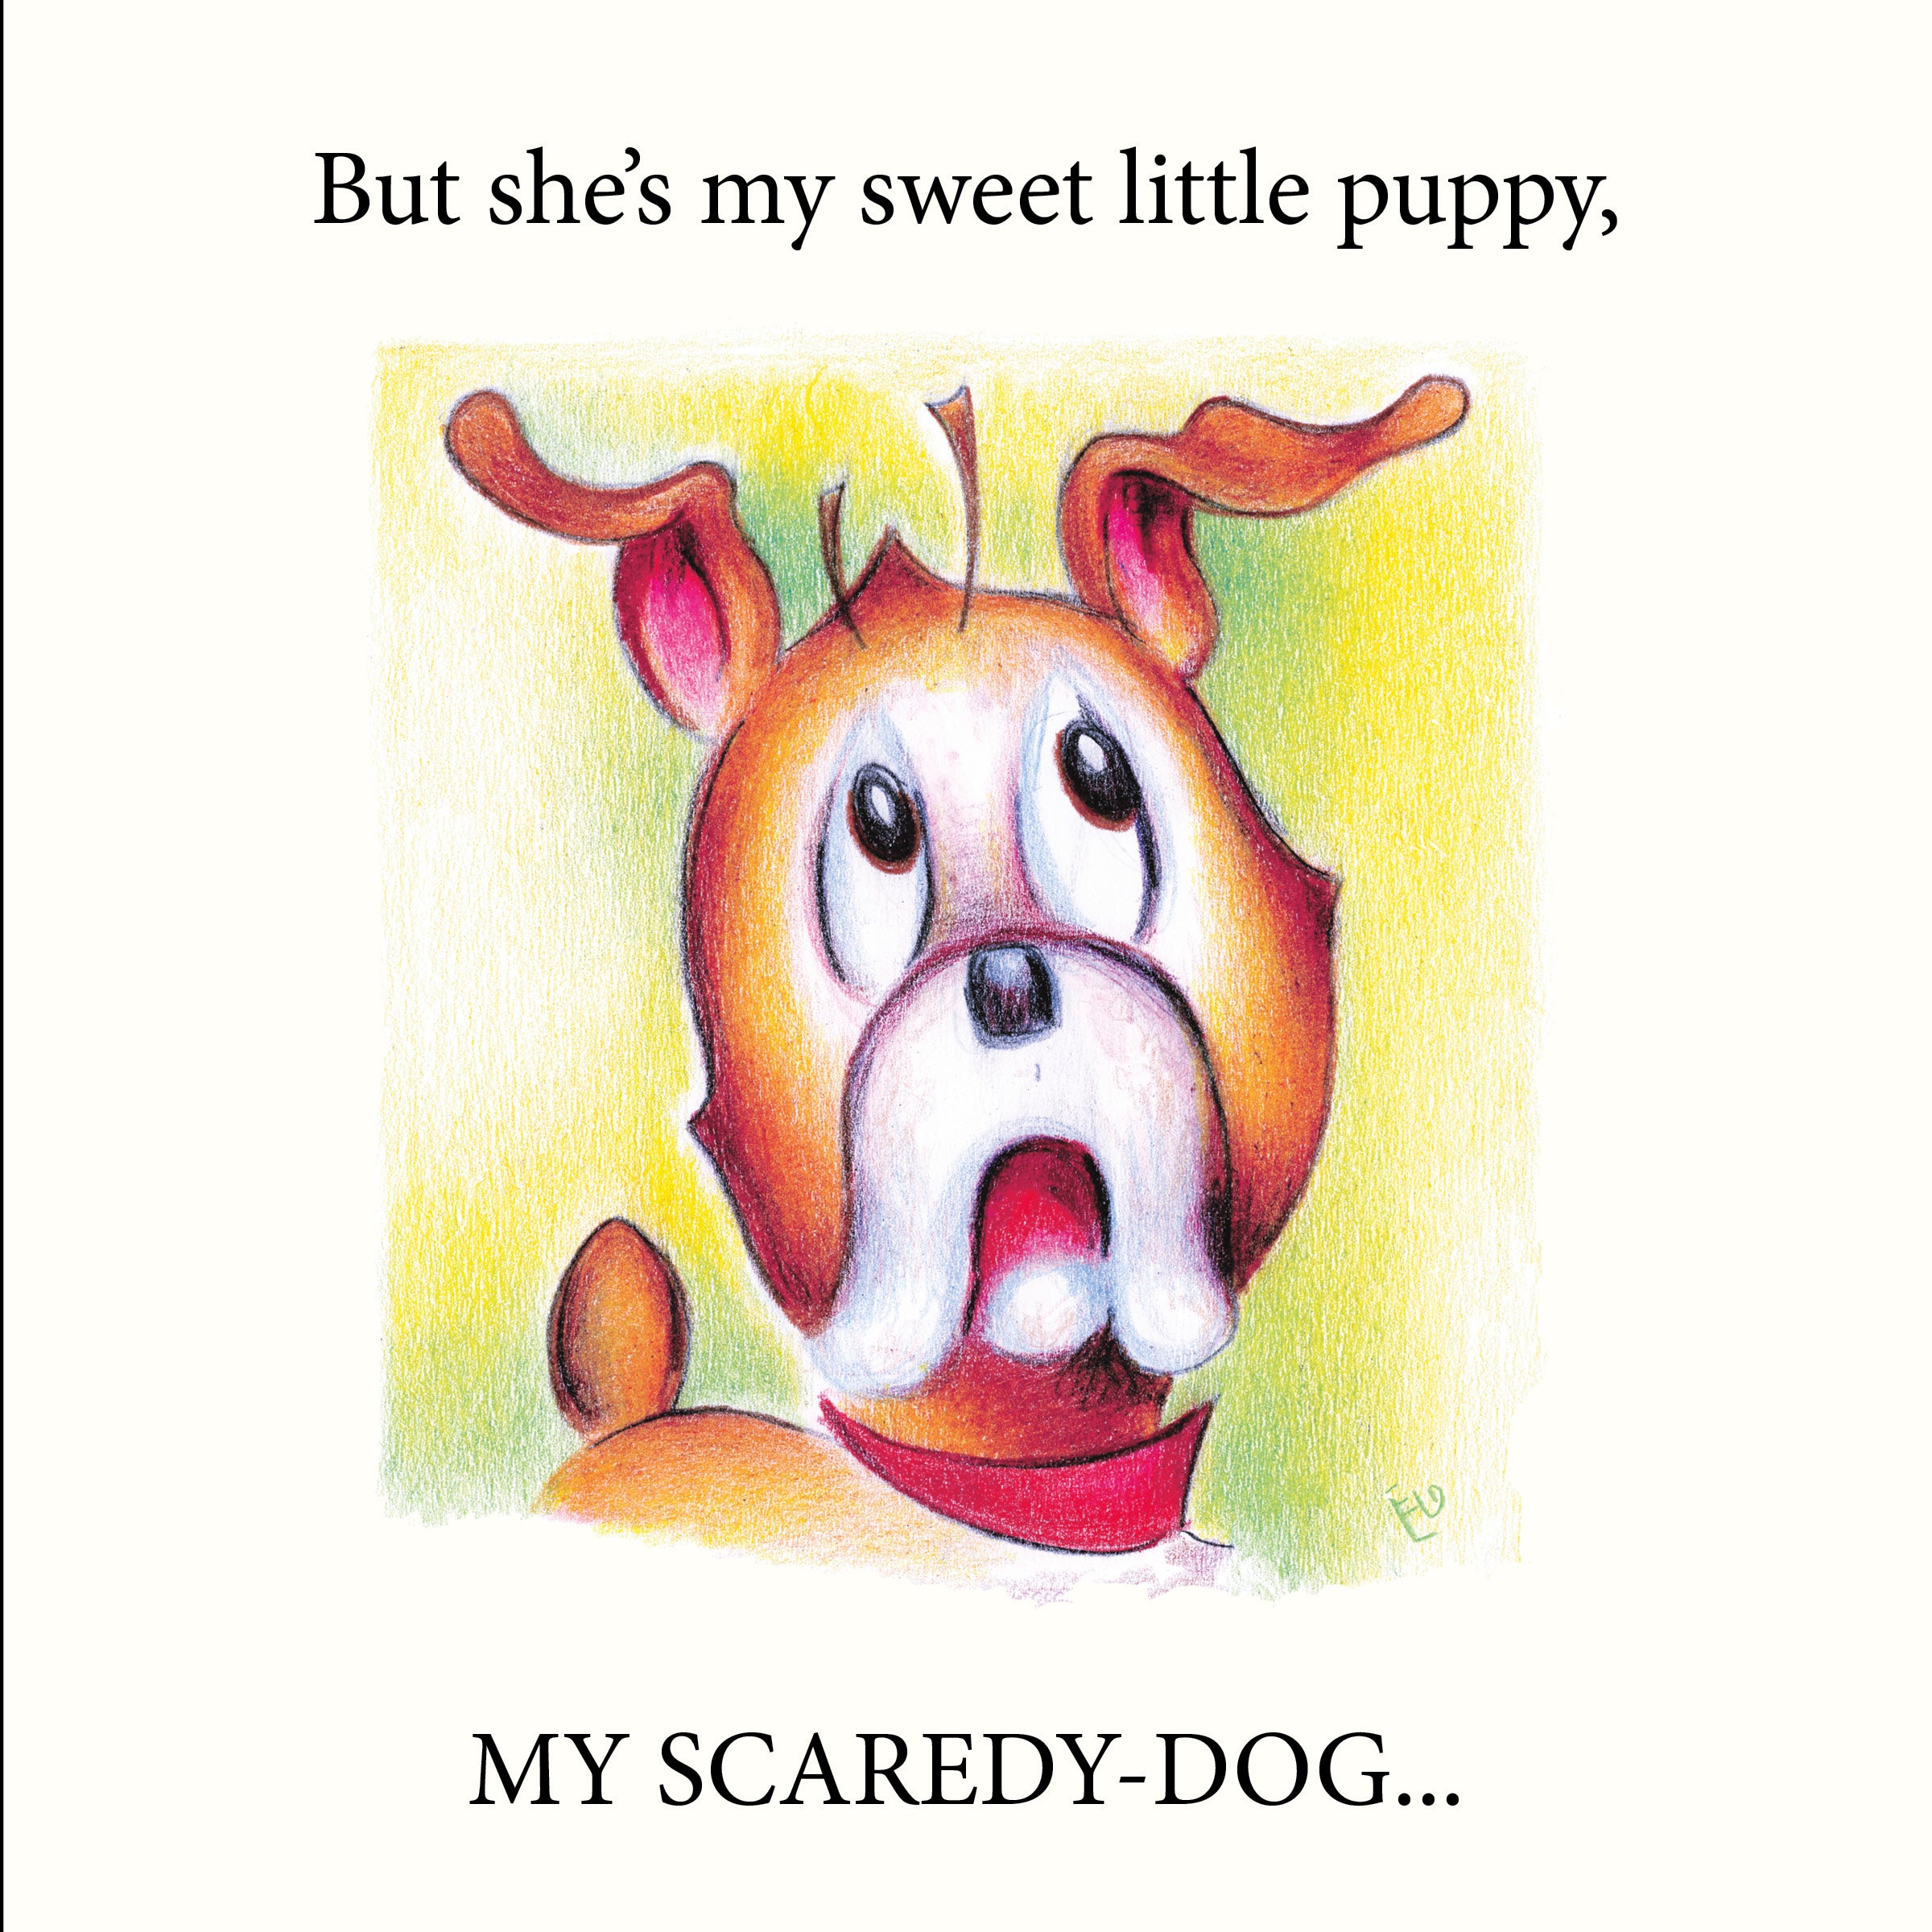 Scaredy-Dog